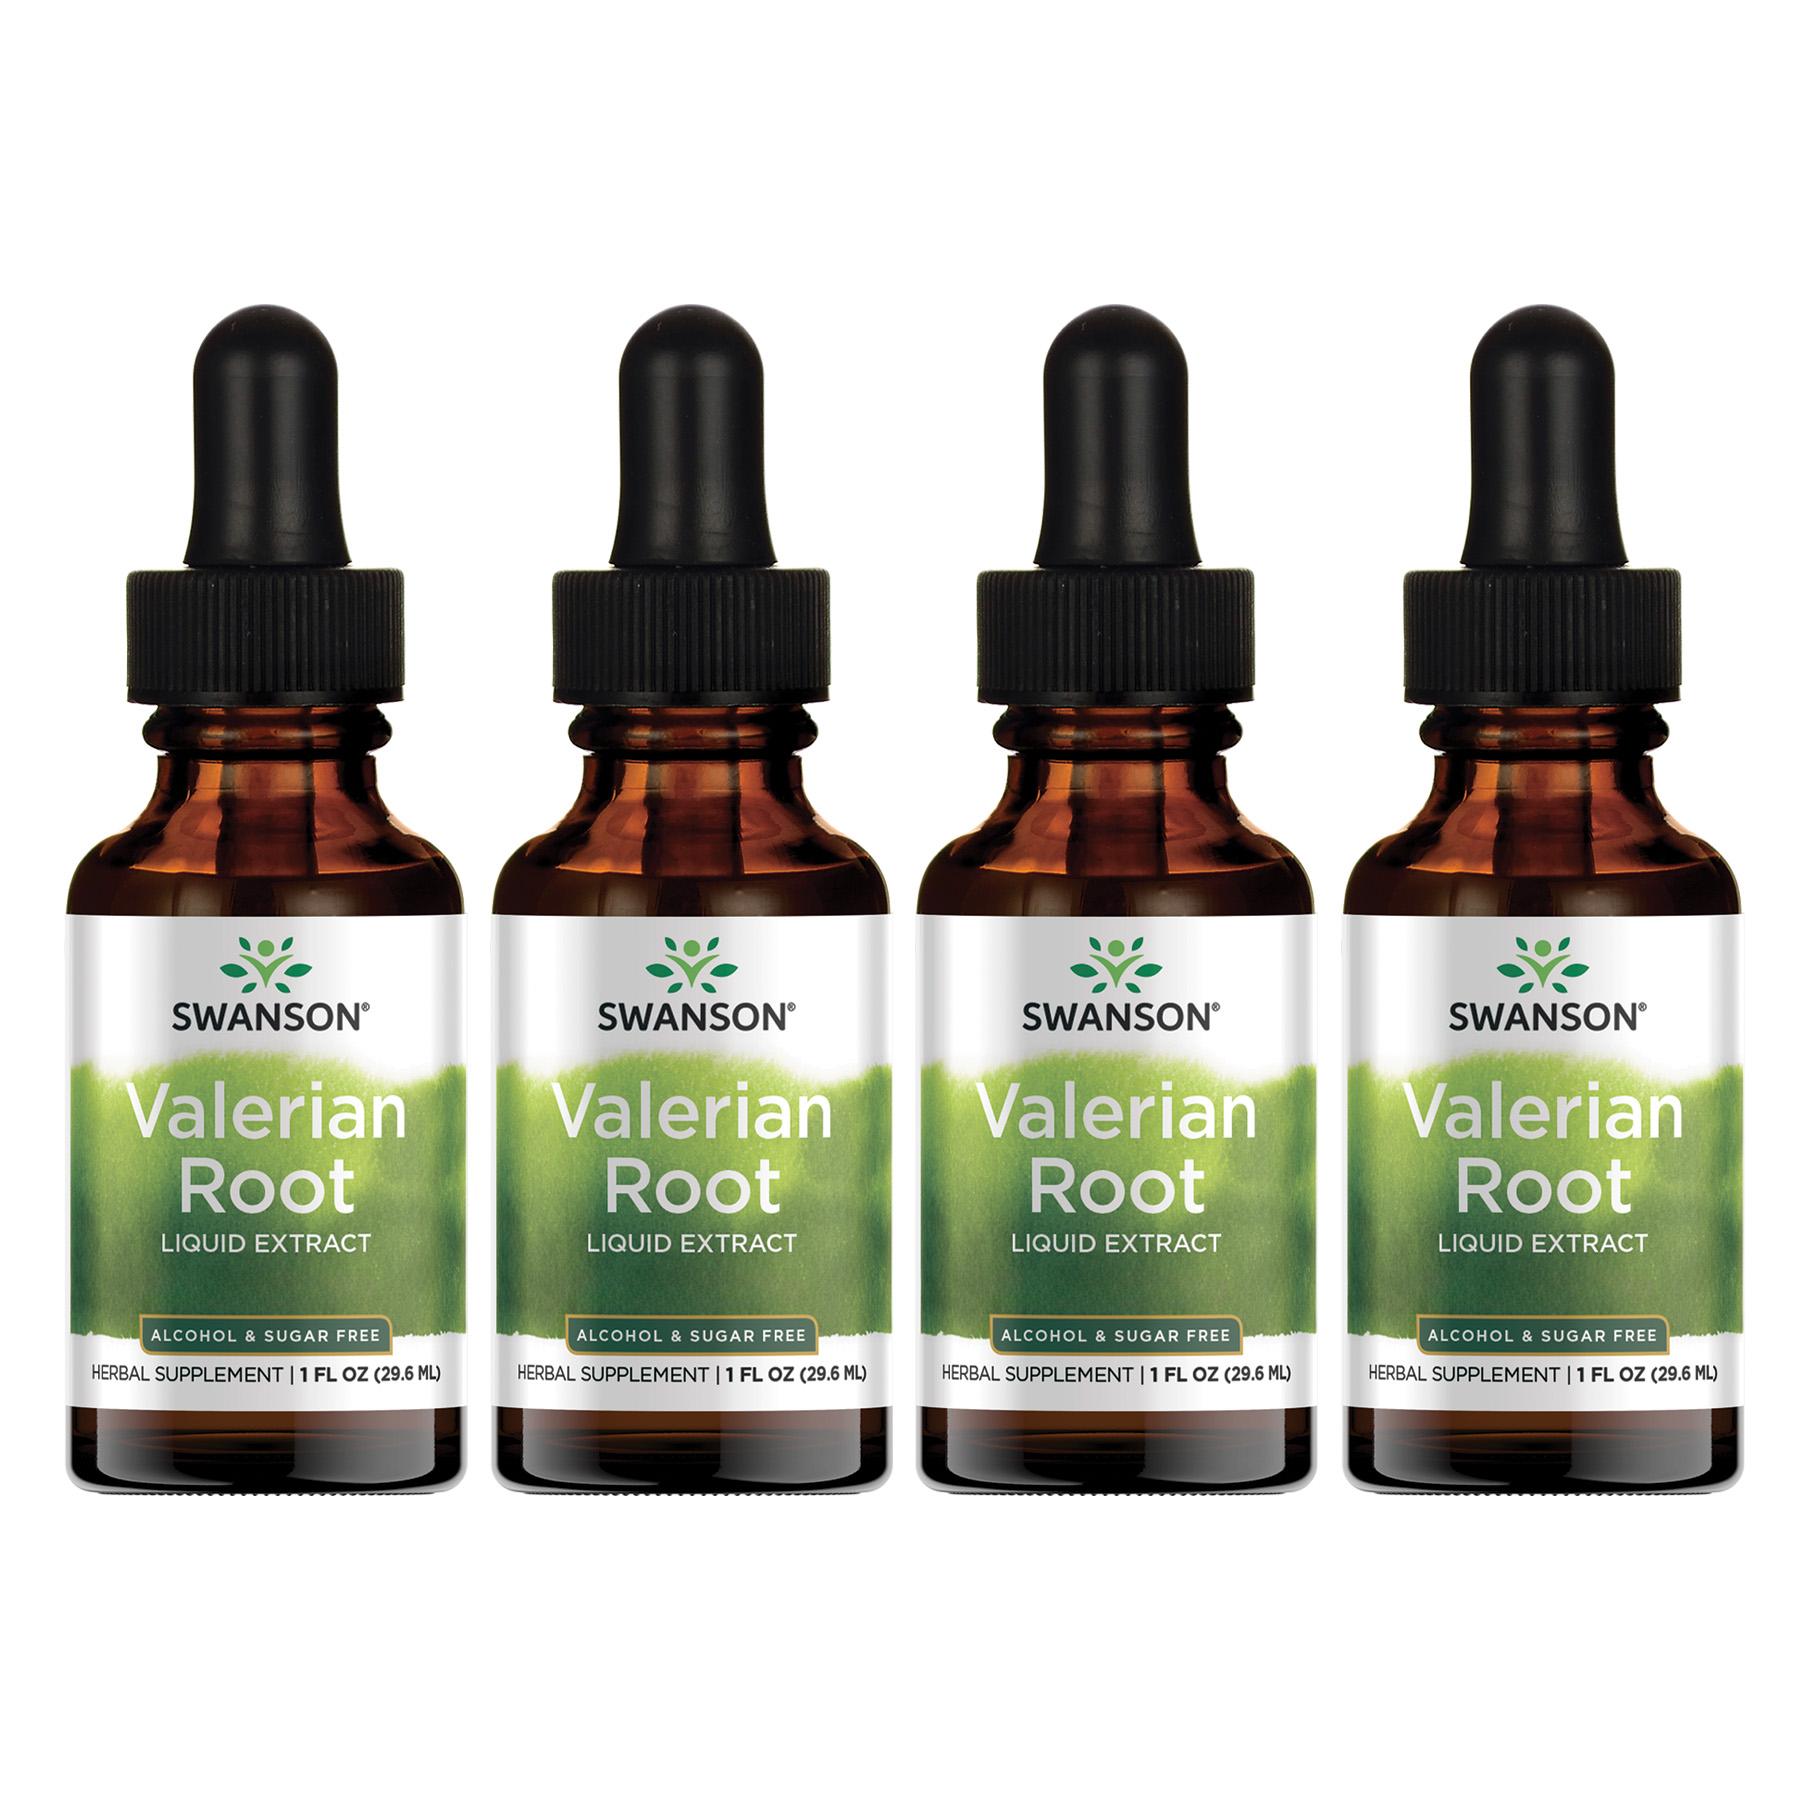 Swanson Premium Valerian Root Liquid Extract - Alcohol & Sugar Free 4 Pack Vitamin 1 G 1 fl oz Liquid